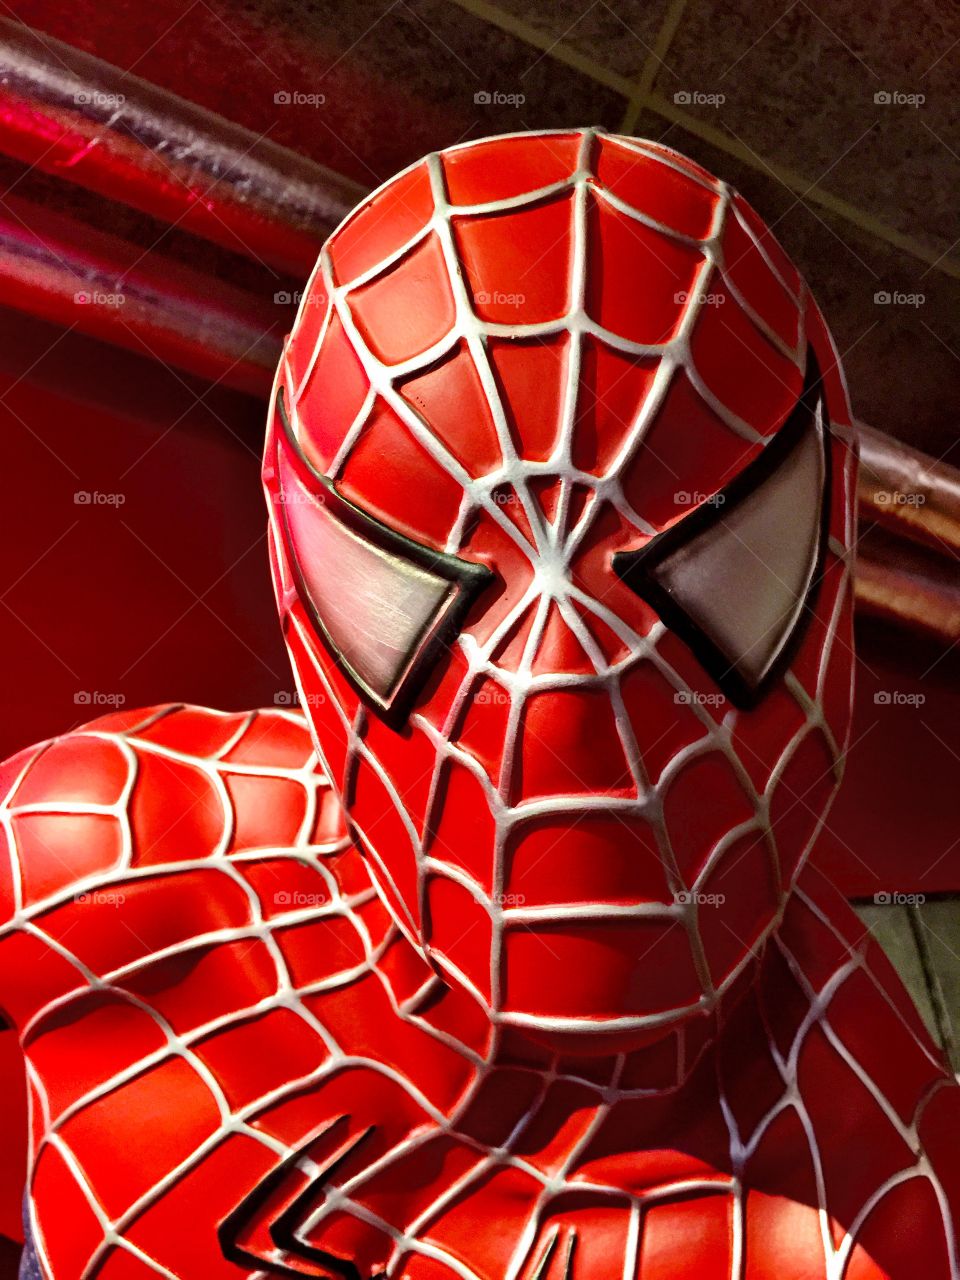 The Spider-Man 